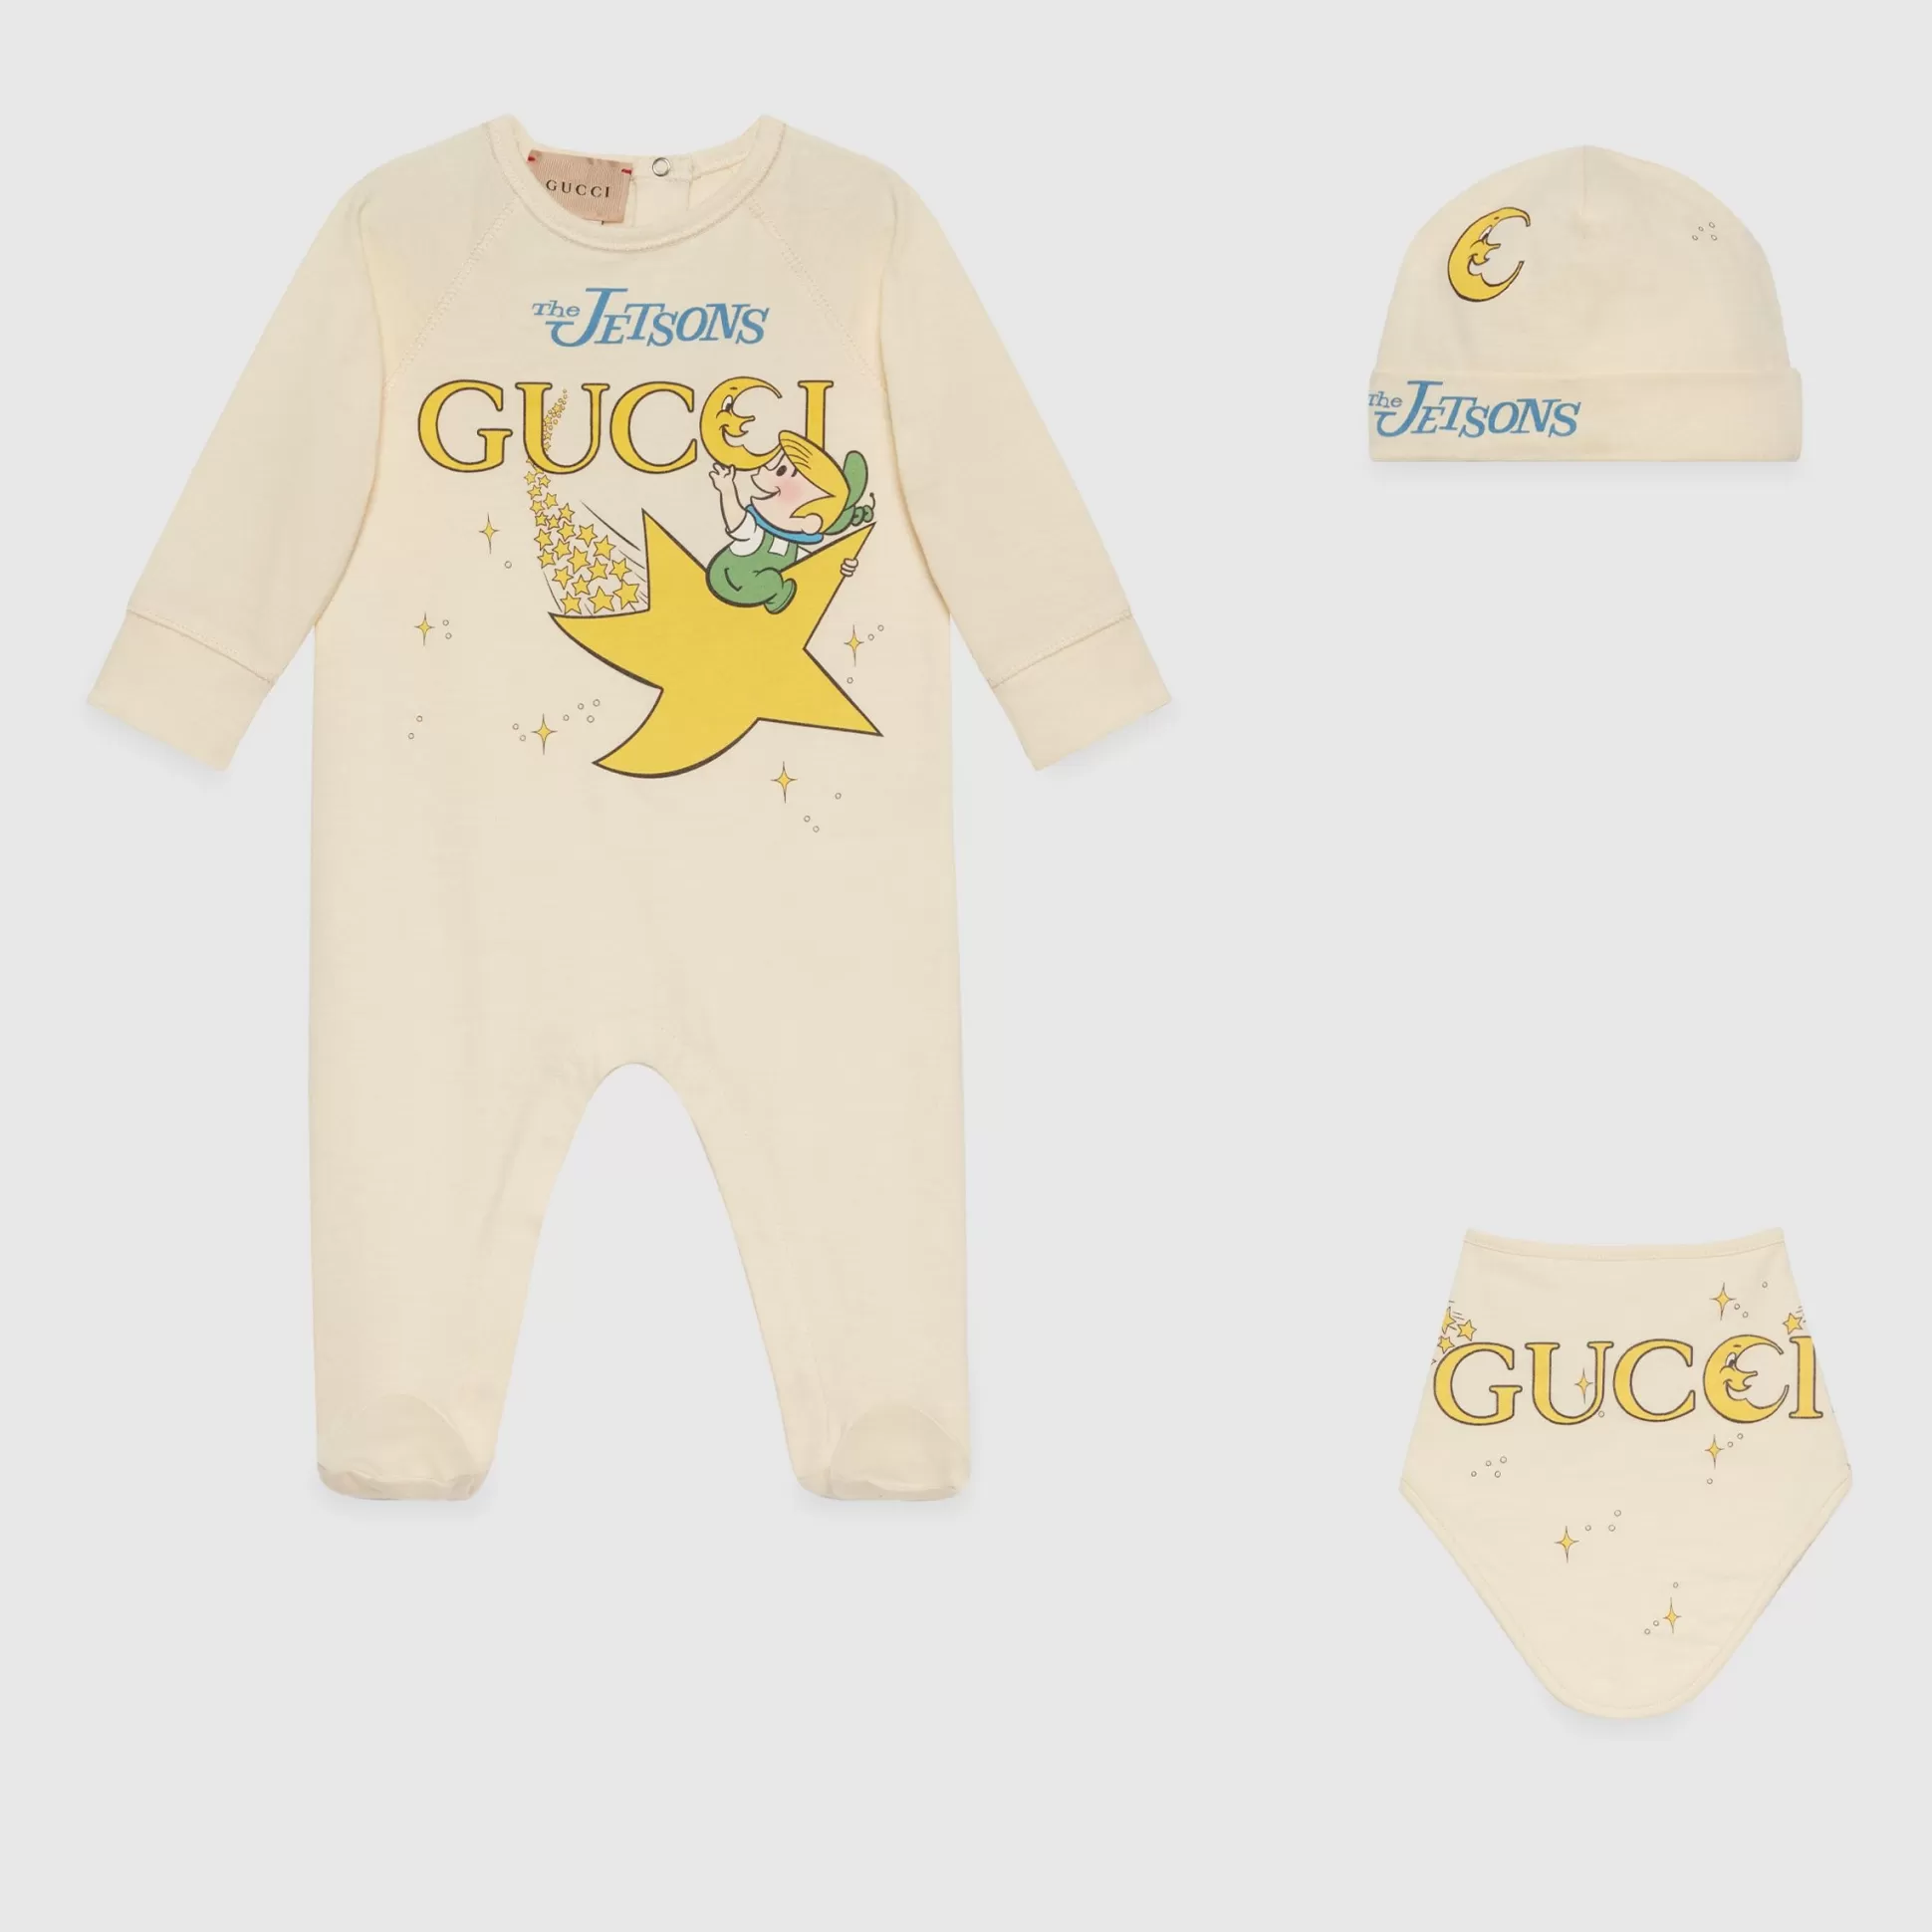 GUCCI Baby Cotton Jersey Gift Set-Children Boys (0-36 Months)